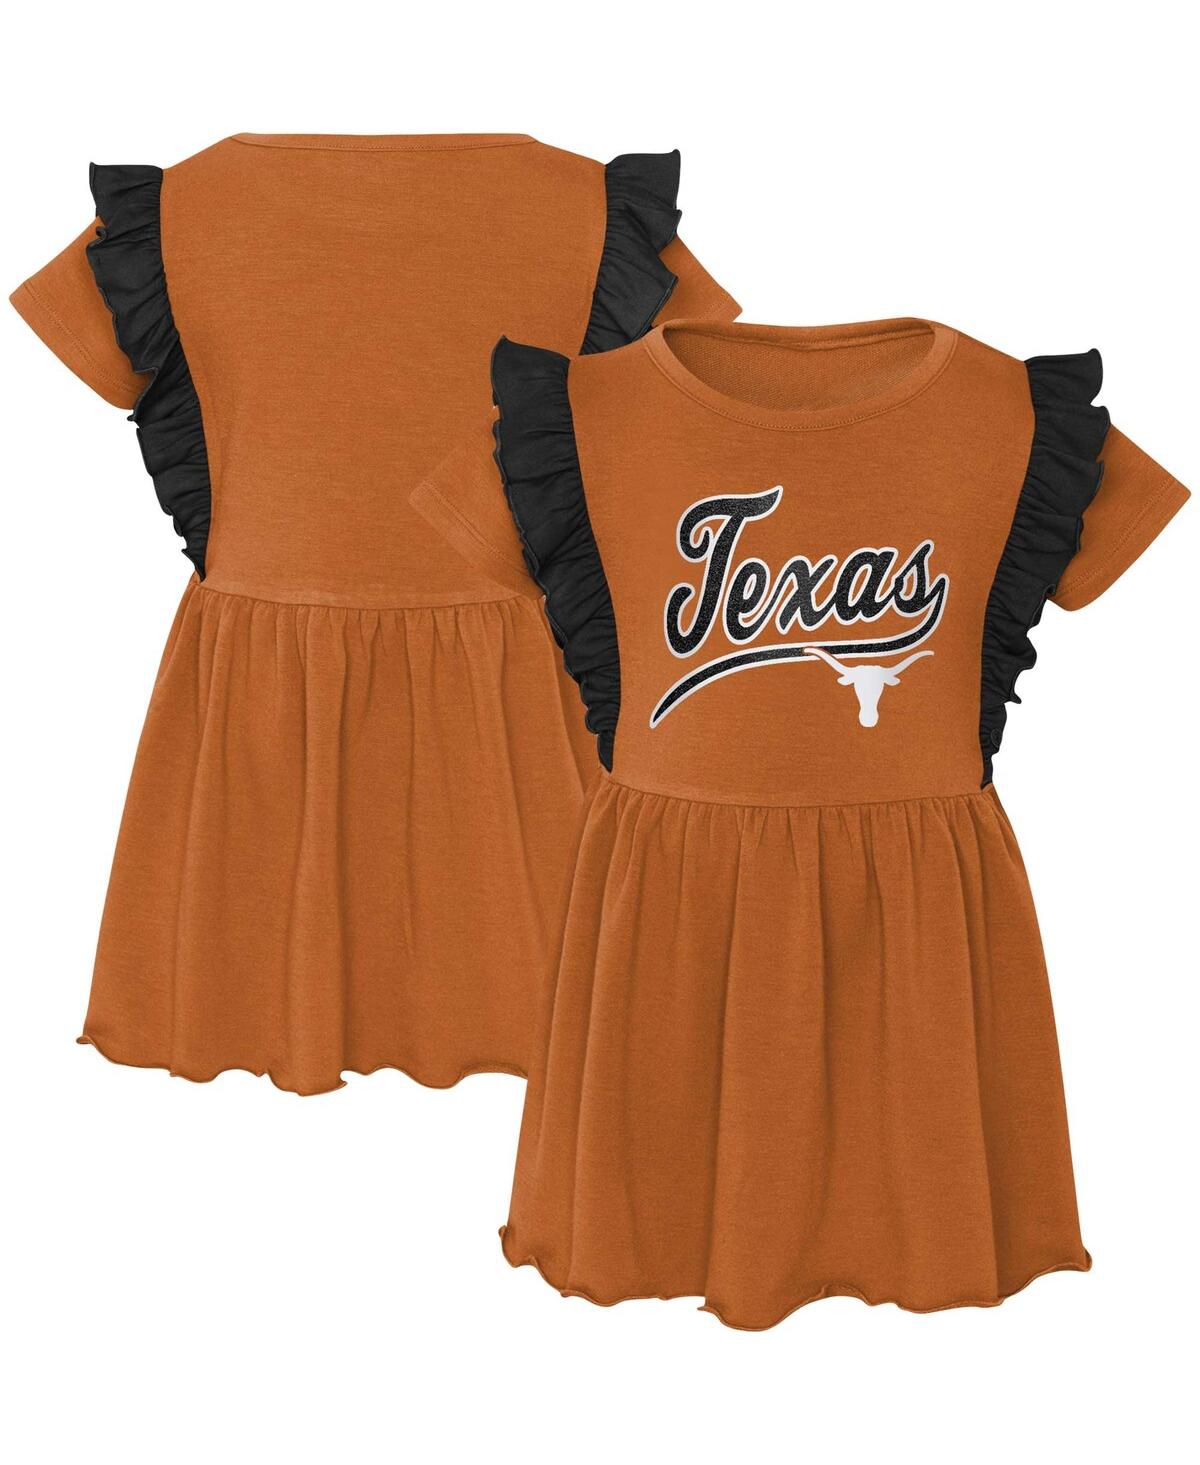 Outerstuff Babies' Girls Toddler Burnt Orange Texas Longhorns Too Cute Tri-blend Dress